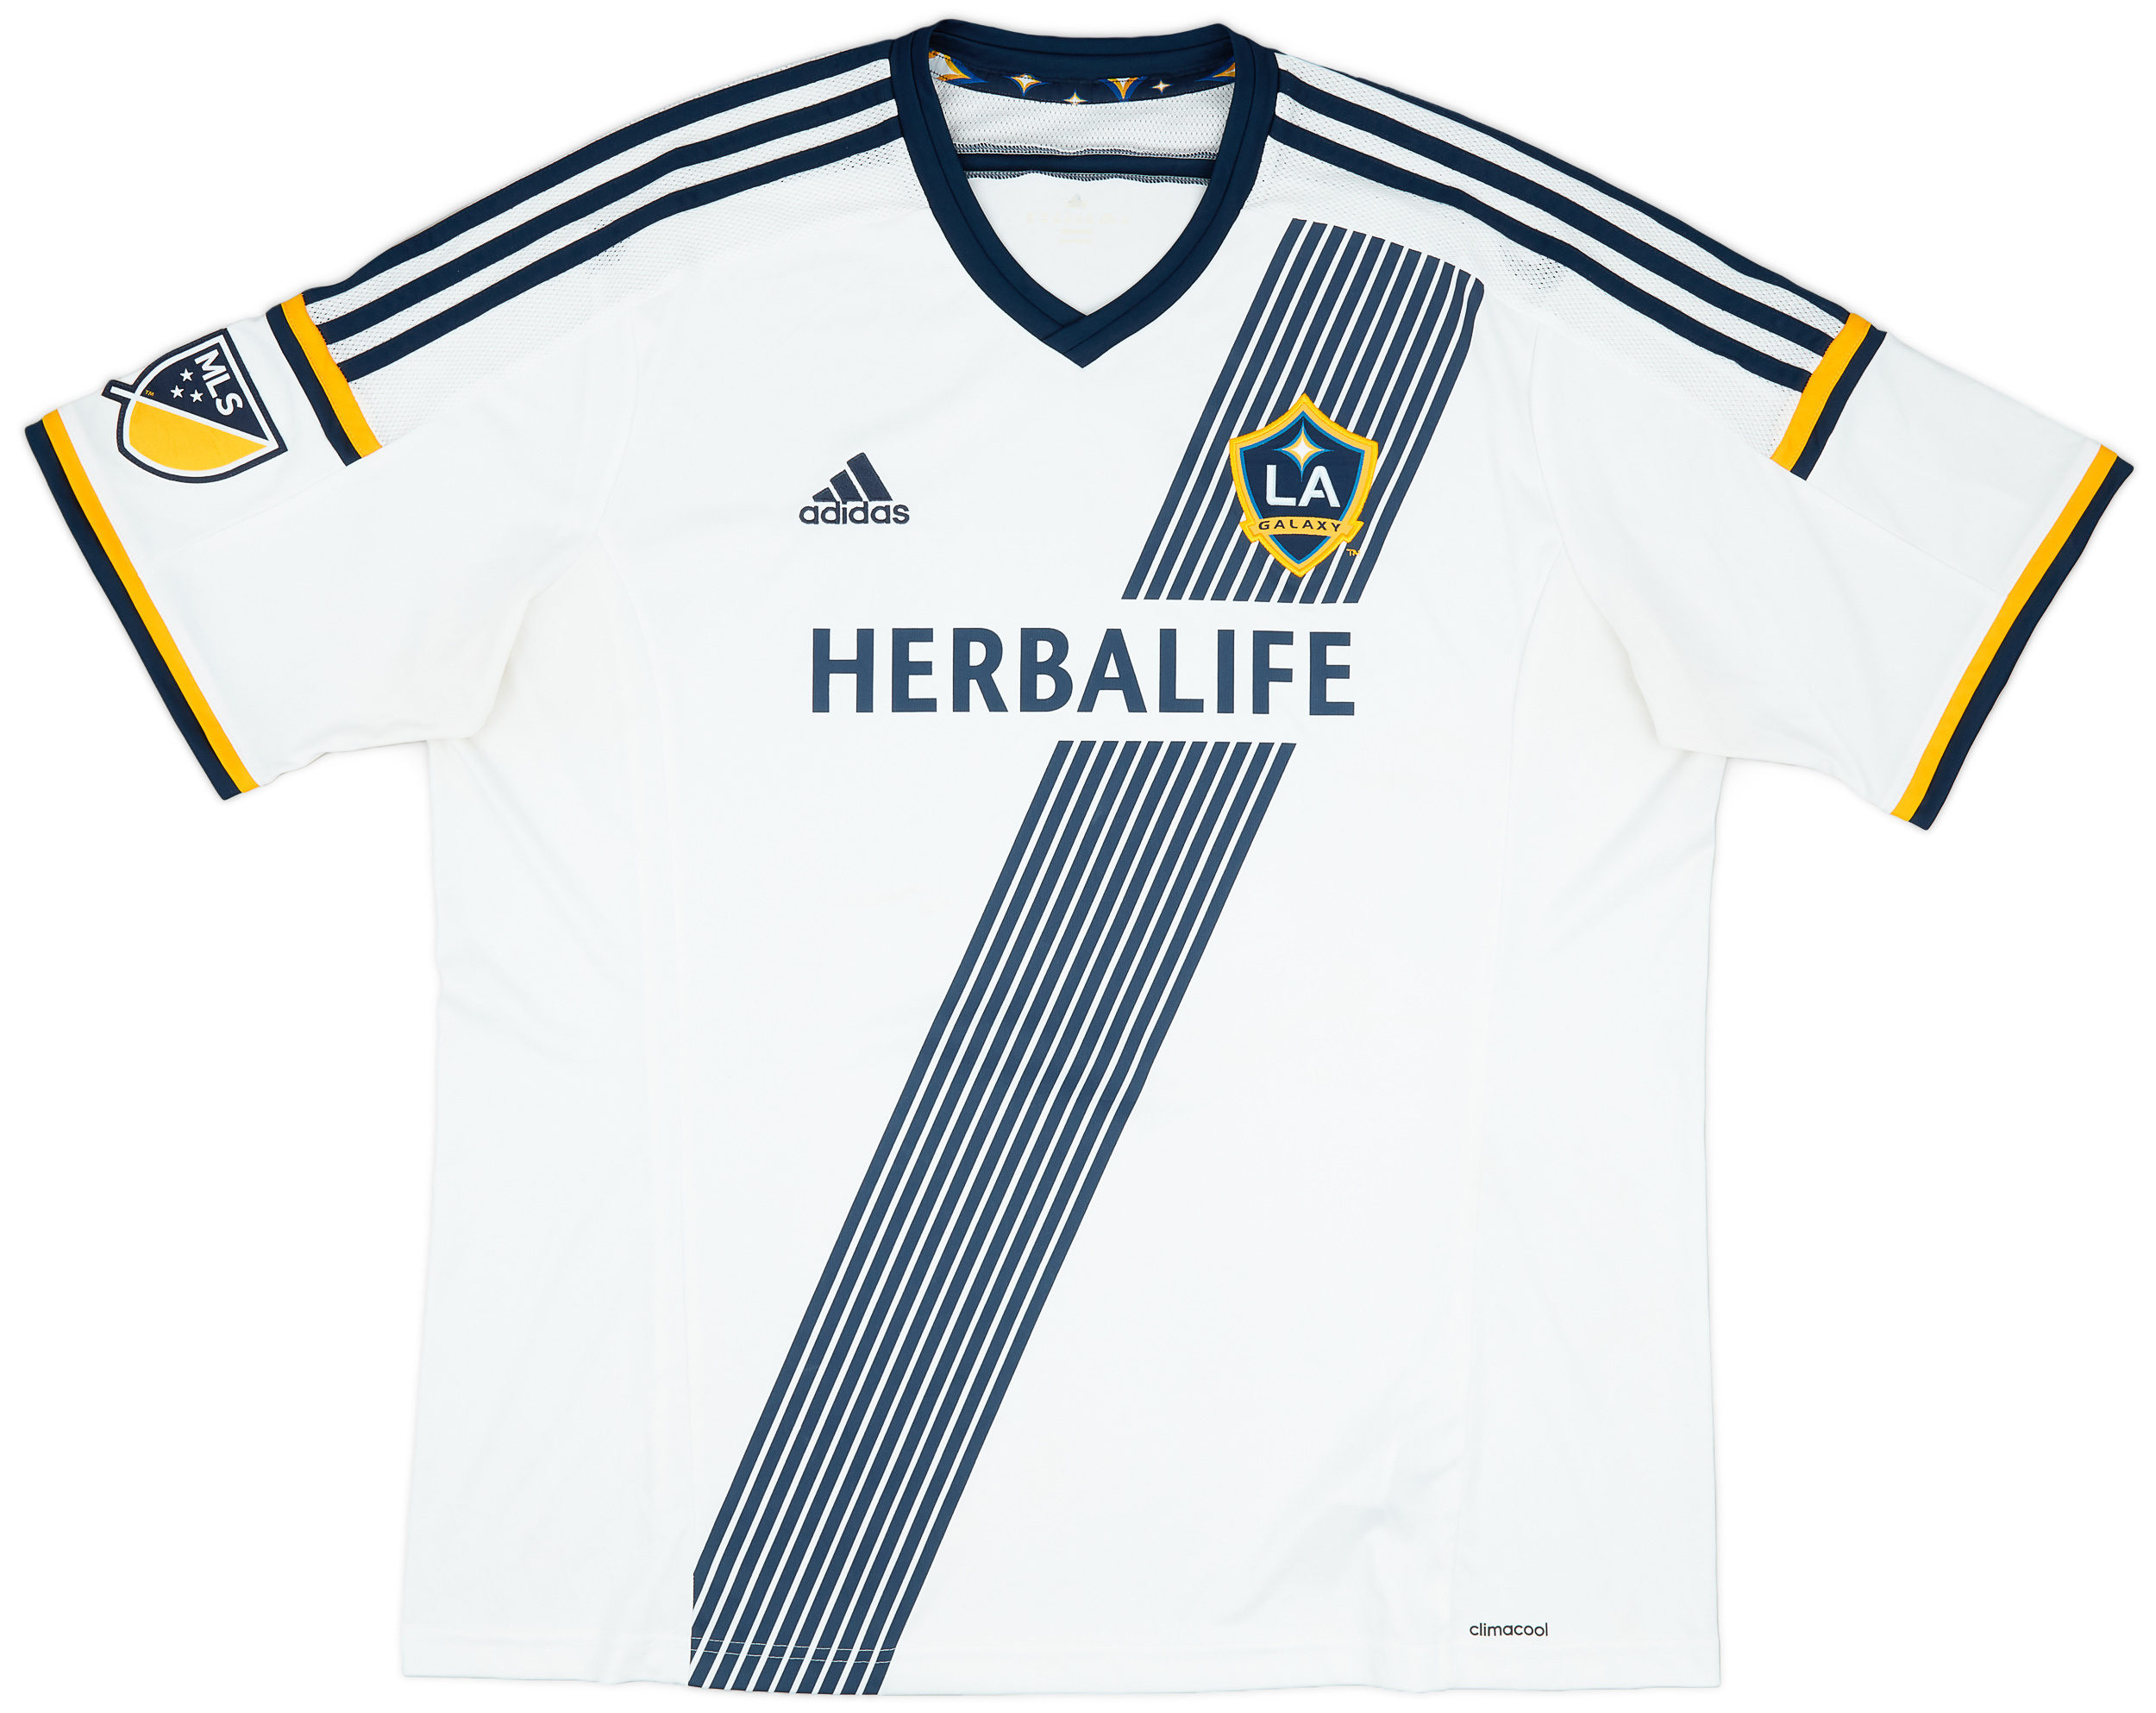 Los Angeles Galaxy  home baju (Original)